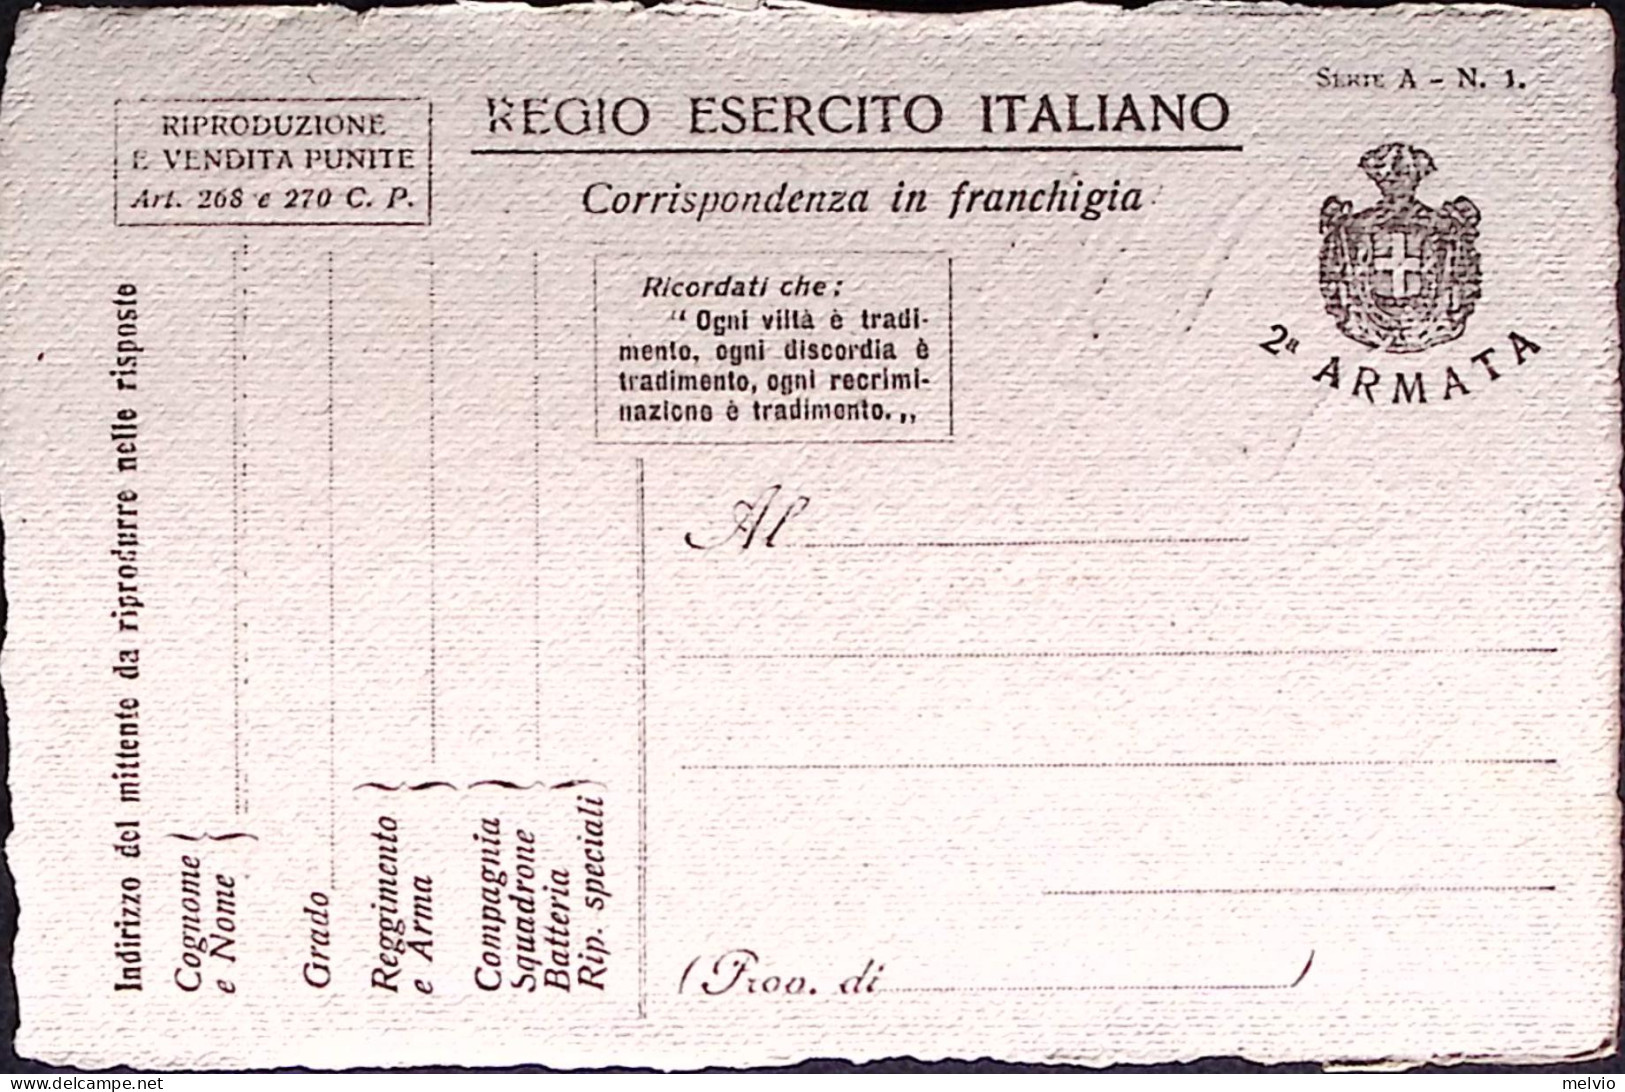 1918-RESISTERE PER VINCERE Cartolina Franchigia 2 Armata, Disegno Attilio Carton - Patriotiques